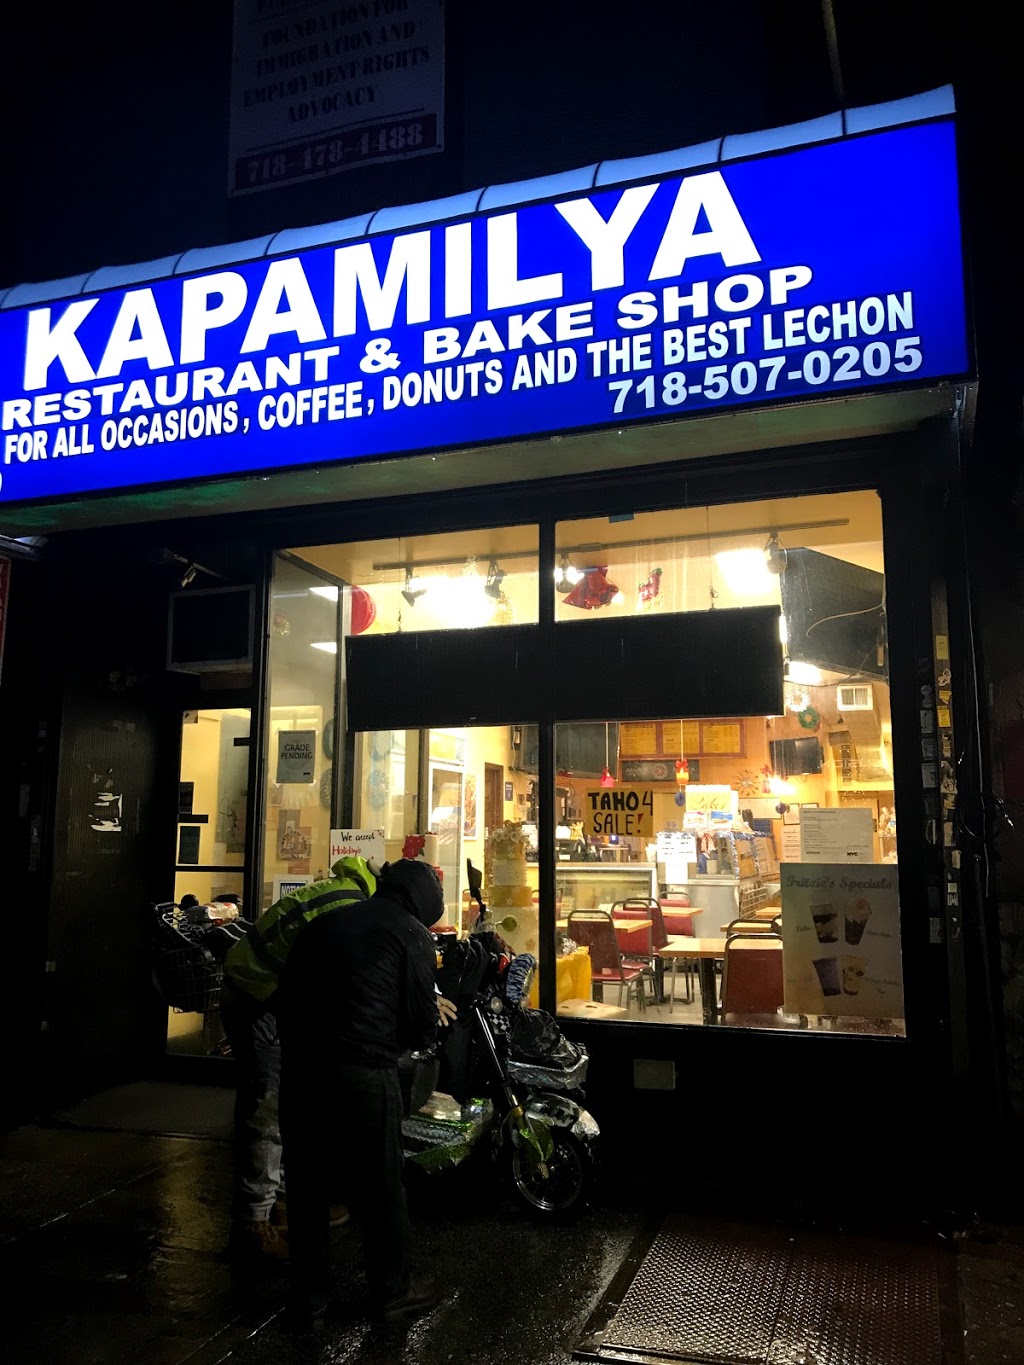 Kapamilya Restaurant and Bakeshop | restaurant | 69-10 Roosevelt Ave, Flushing, NY 11377, USA | 7185070205 OR +1 718-507-0205